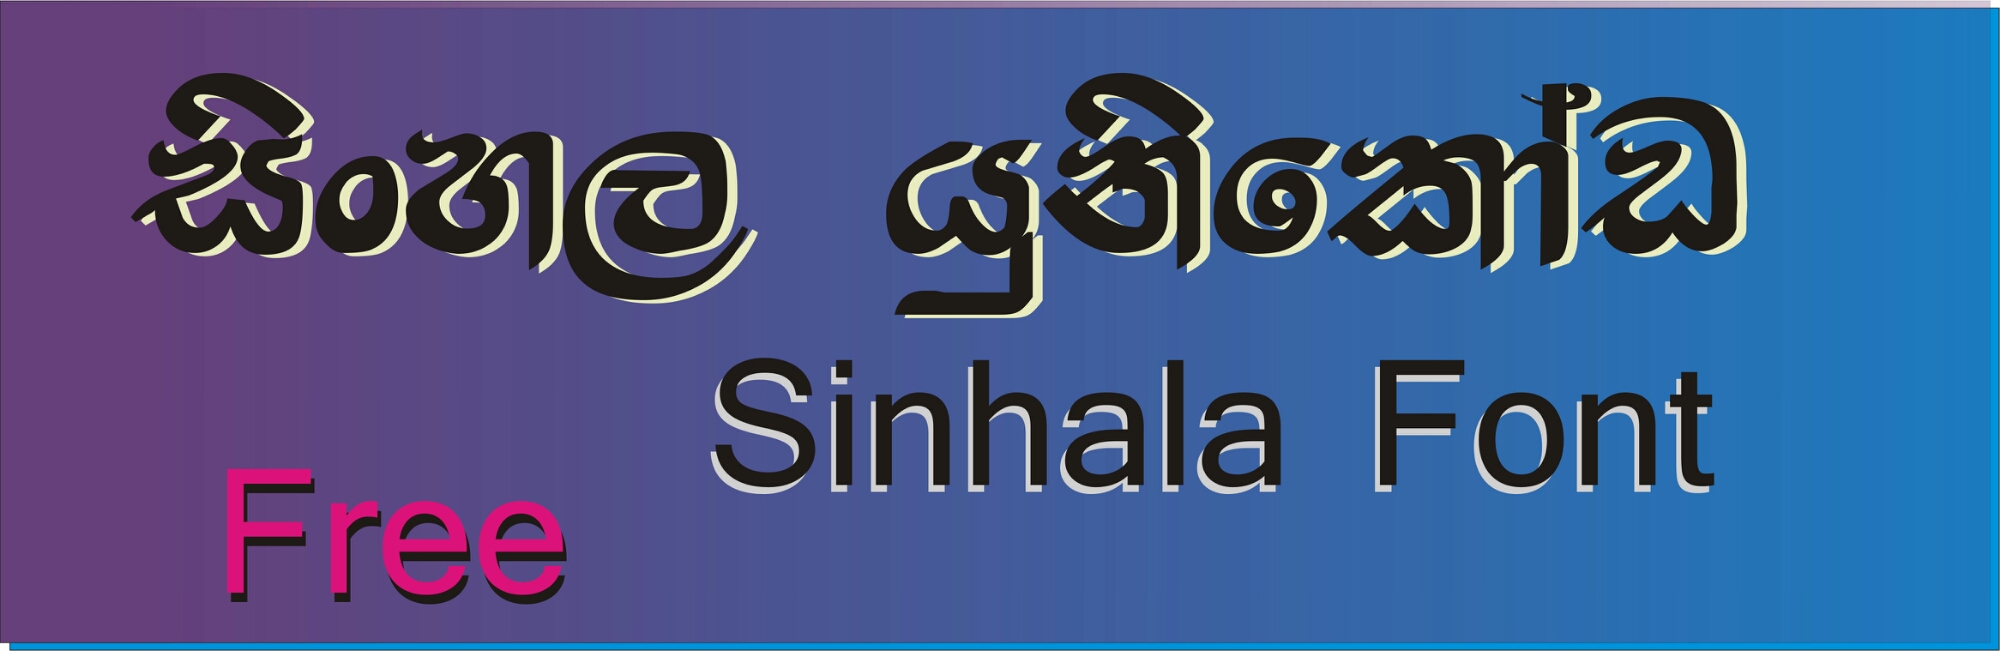 fm sinhala font free download